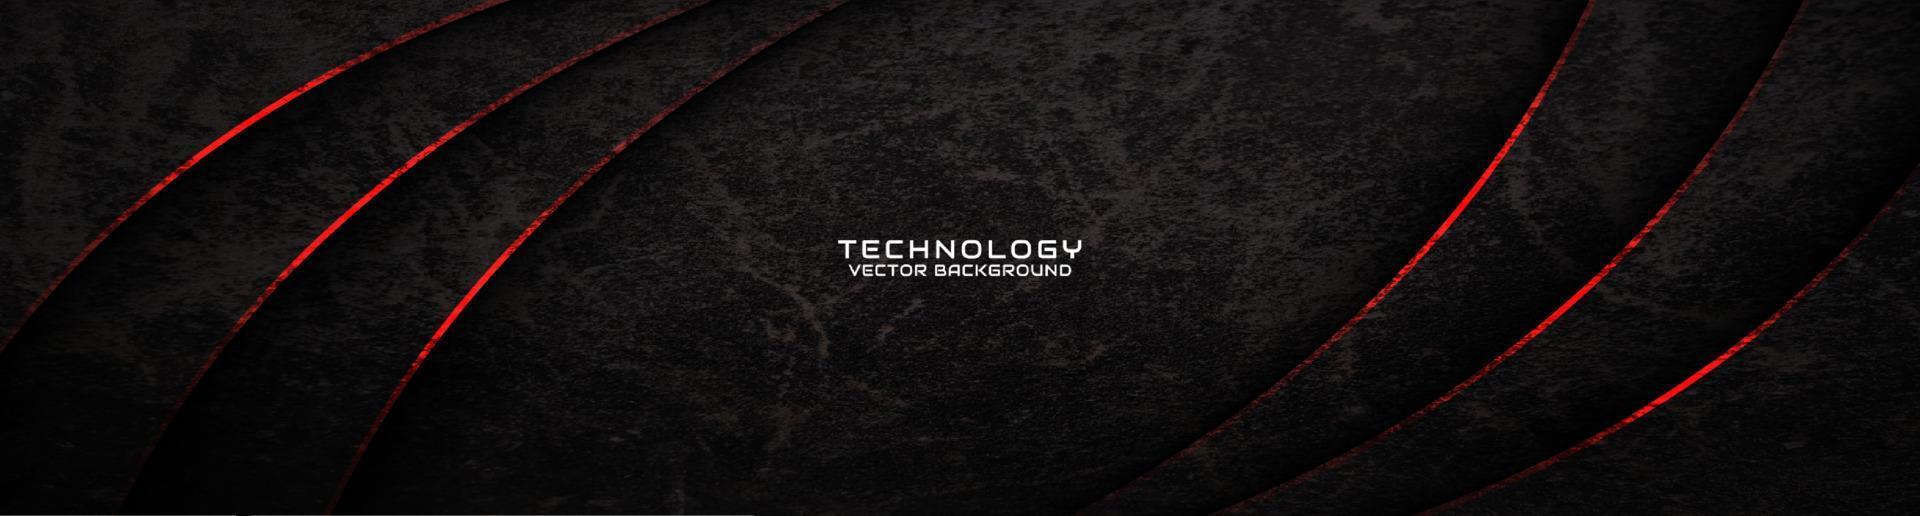 3d zwart ruw grunge techno abstract achtergrond overlappen laag Aan donker ruimte met rood golven decoratie. modern grafisch ontwerp element uitknippen stijl concept voor banier, folder, kaart, of brochure Hoes vector